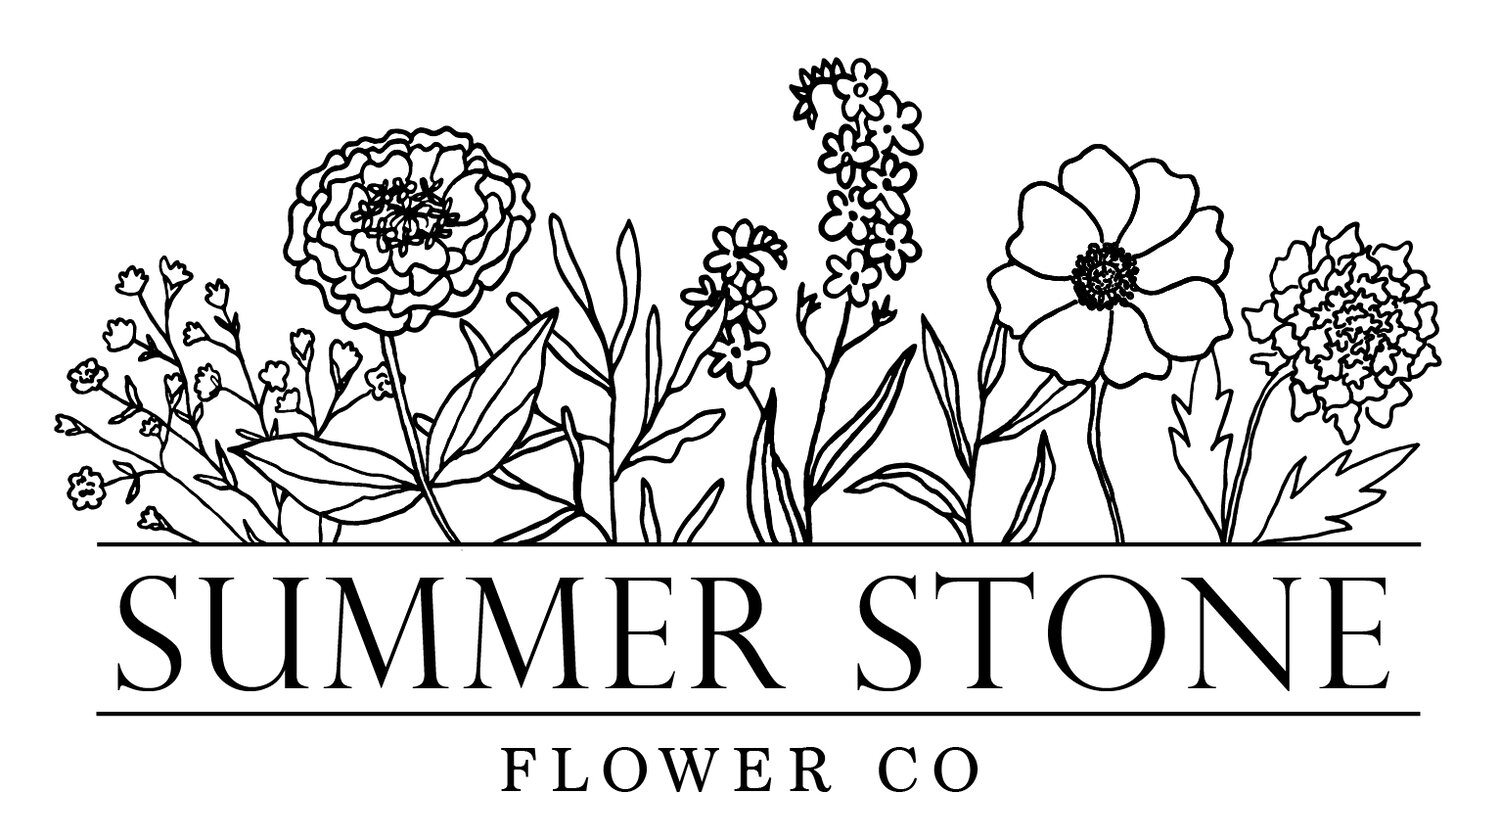 Summer Stone Flower Co